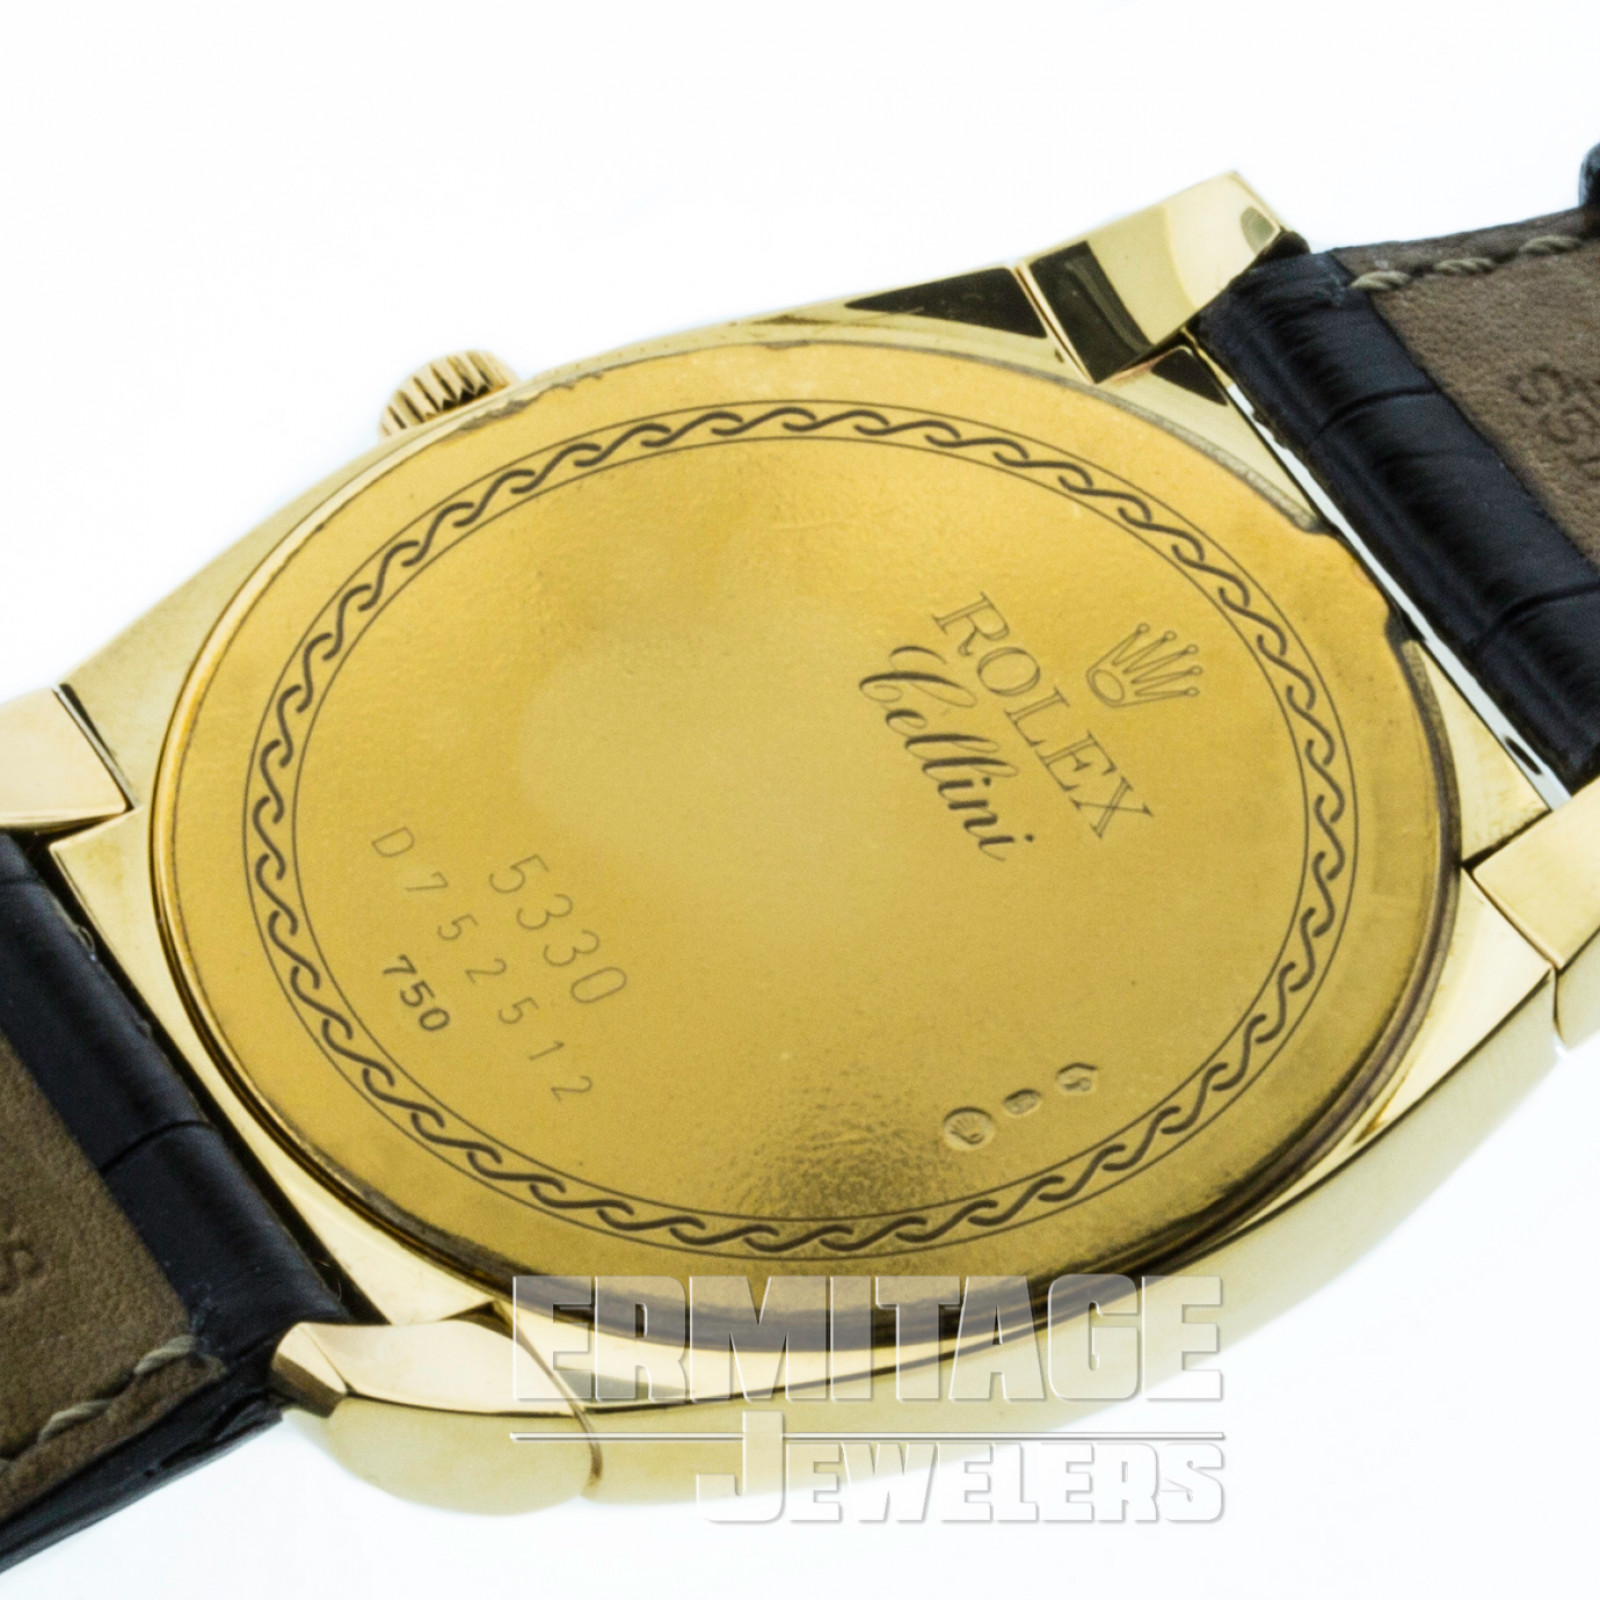 Gold on Strap Rolex Cellini Cestello 5330 35 mm